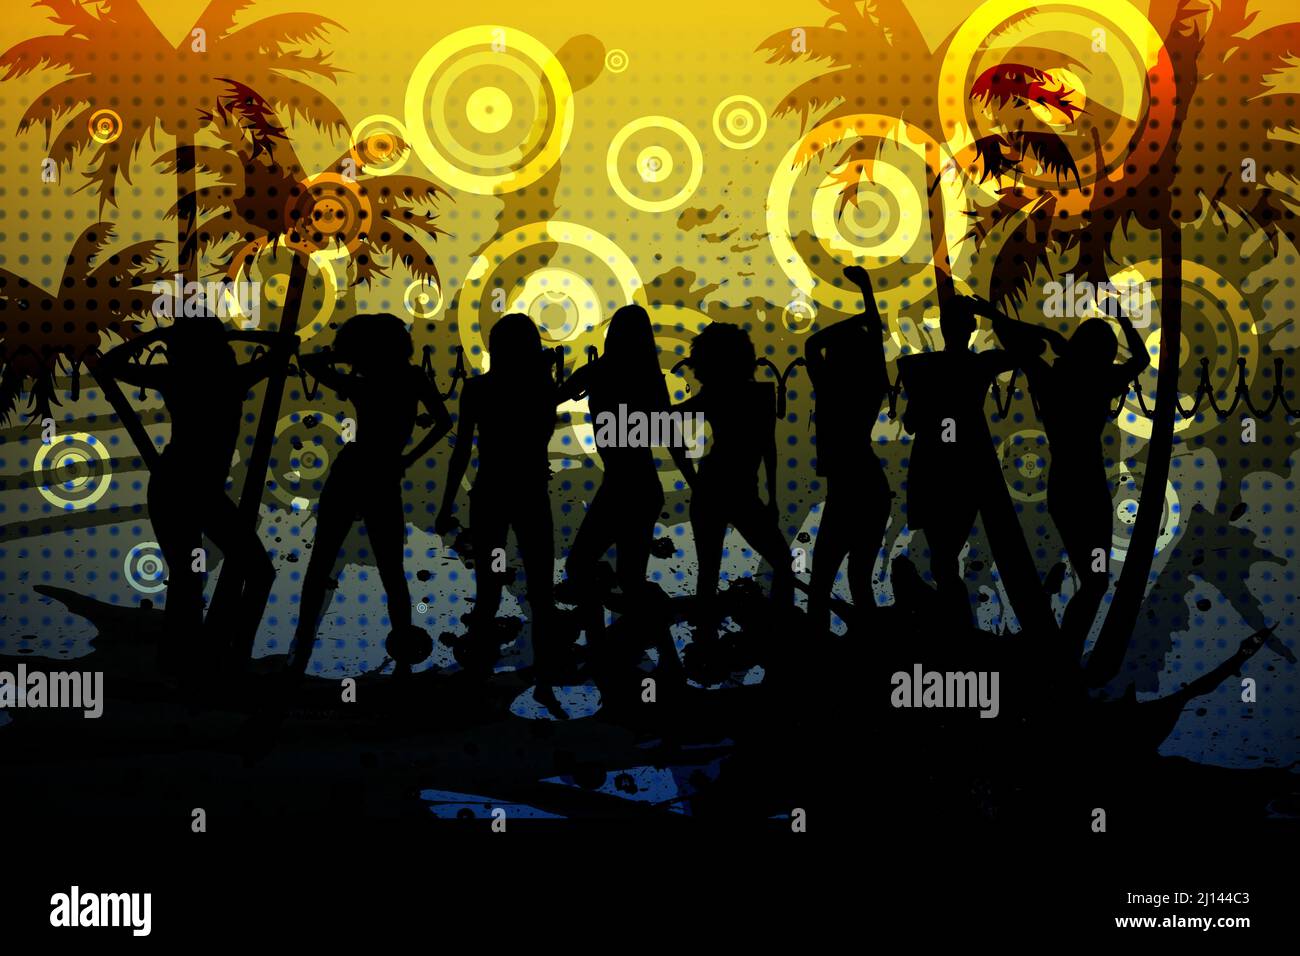 Silueta de gente bailando y palmeras sobre fondo amarillo Foto de stock